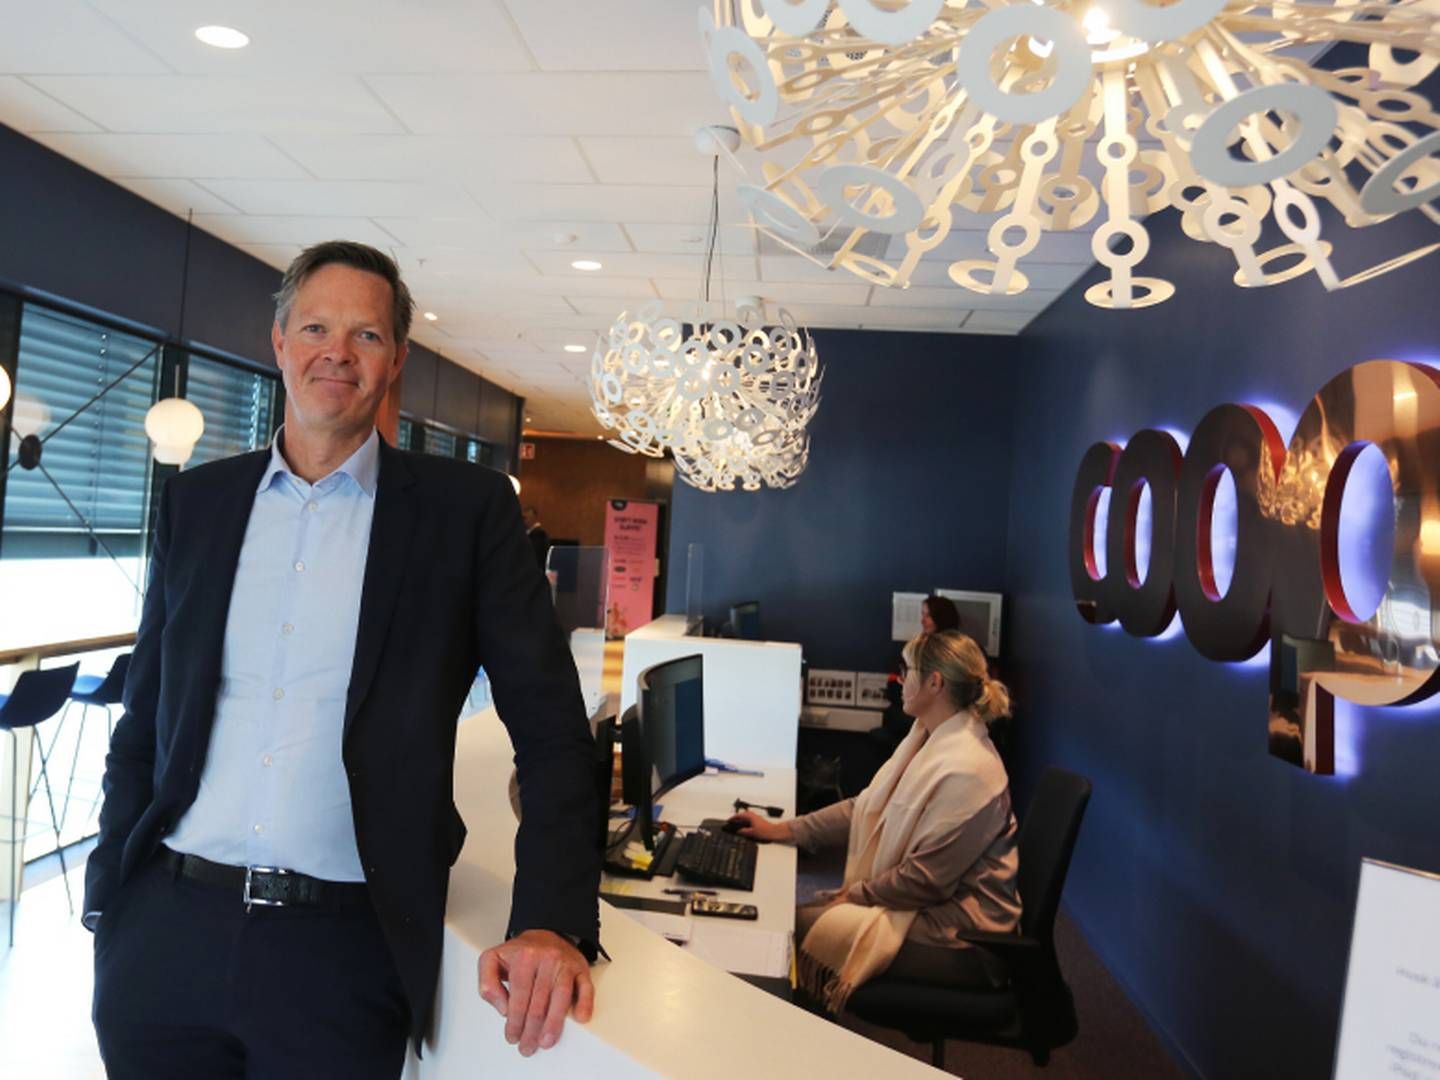 ENDRING: Philipp Engedal har hatt seks måneder i jobben som sjef for daglivarekjeden Coop Norge SA, og har allerede satt i verk deler av sin nye strategi. | Foto: Gøril Huse / HandelsWatch